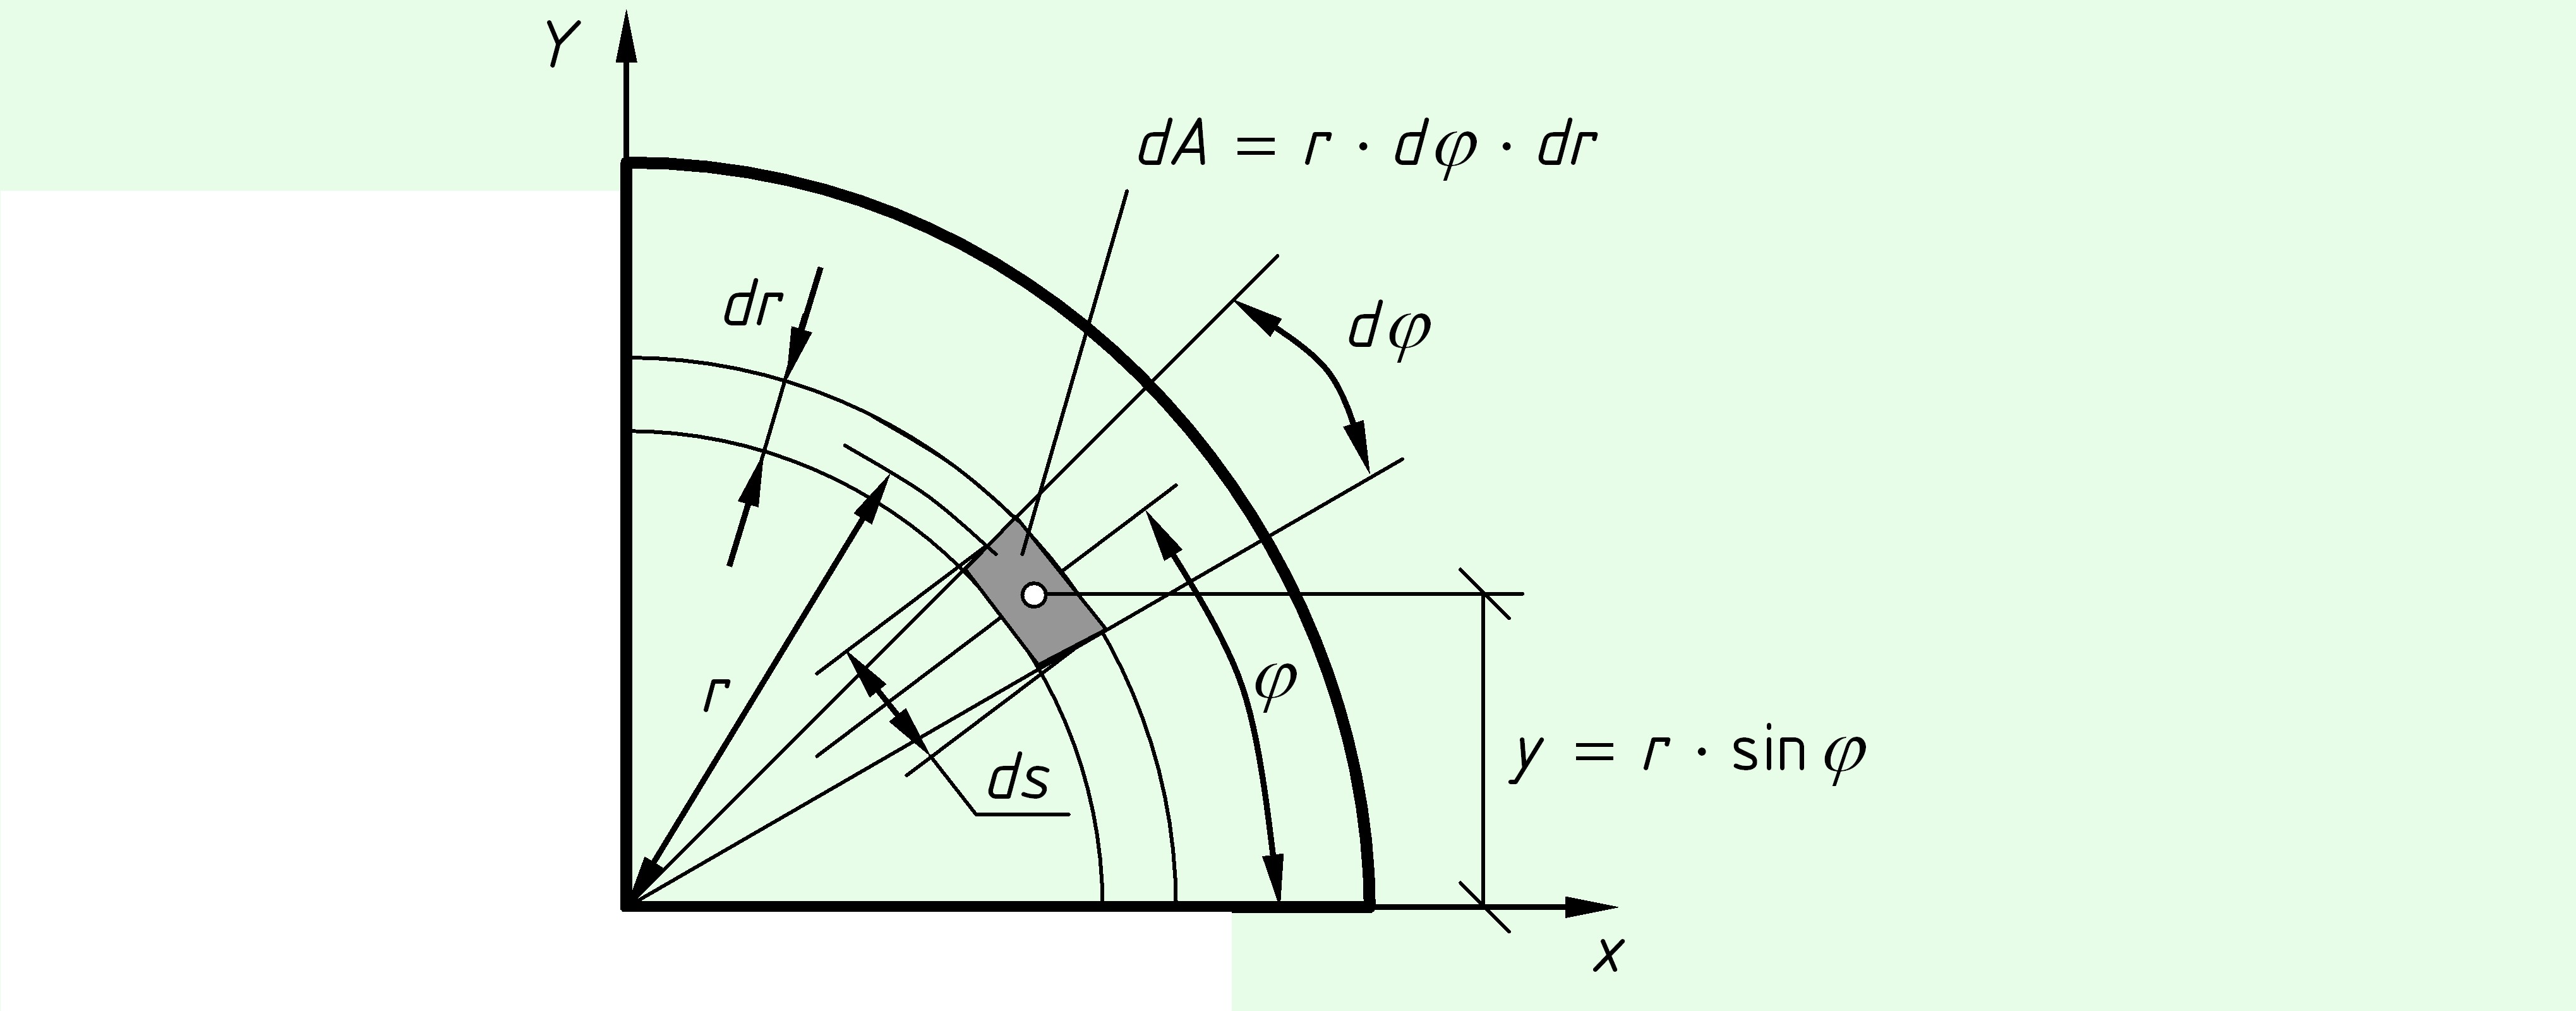 Условная линия на плане соединяющая точки с одинаковой абсолютной высотой называется